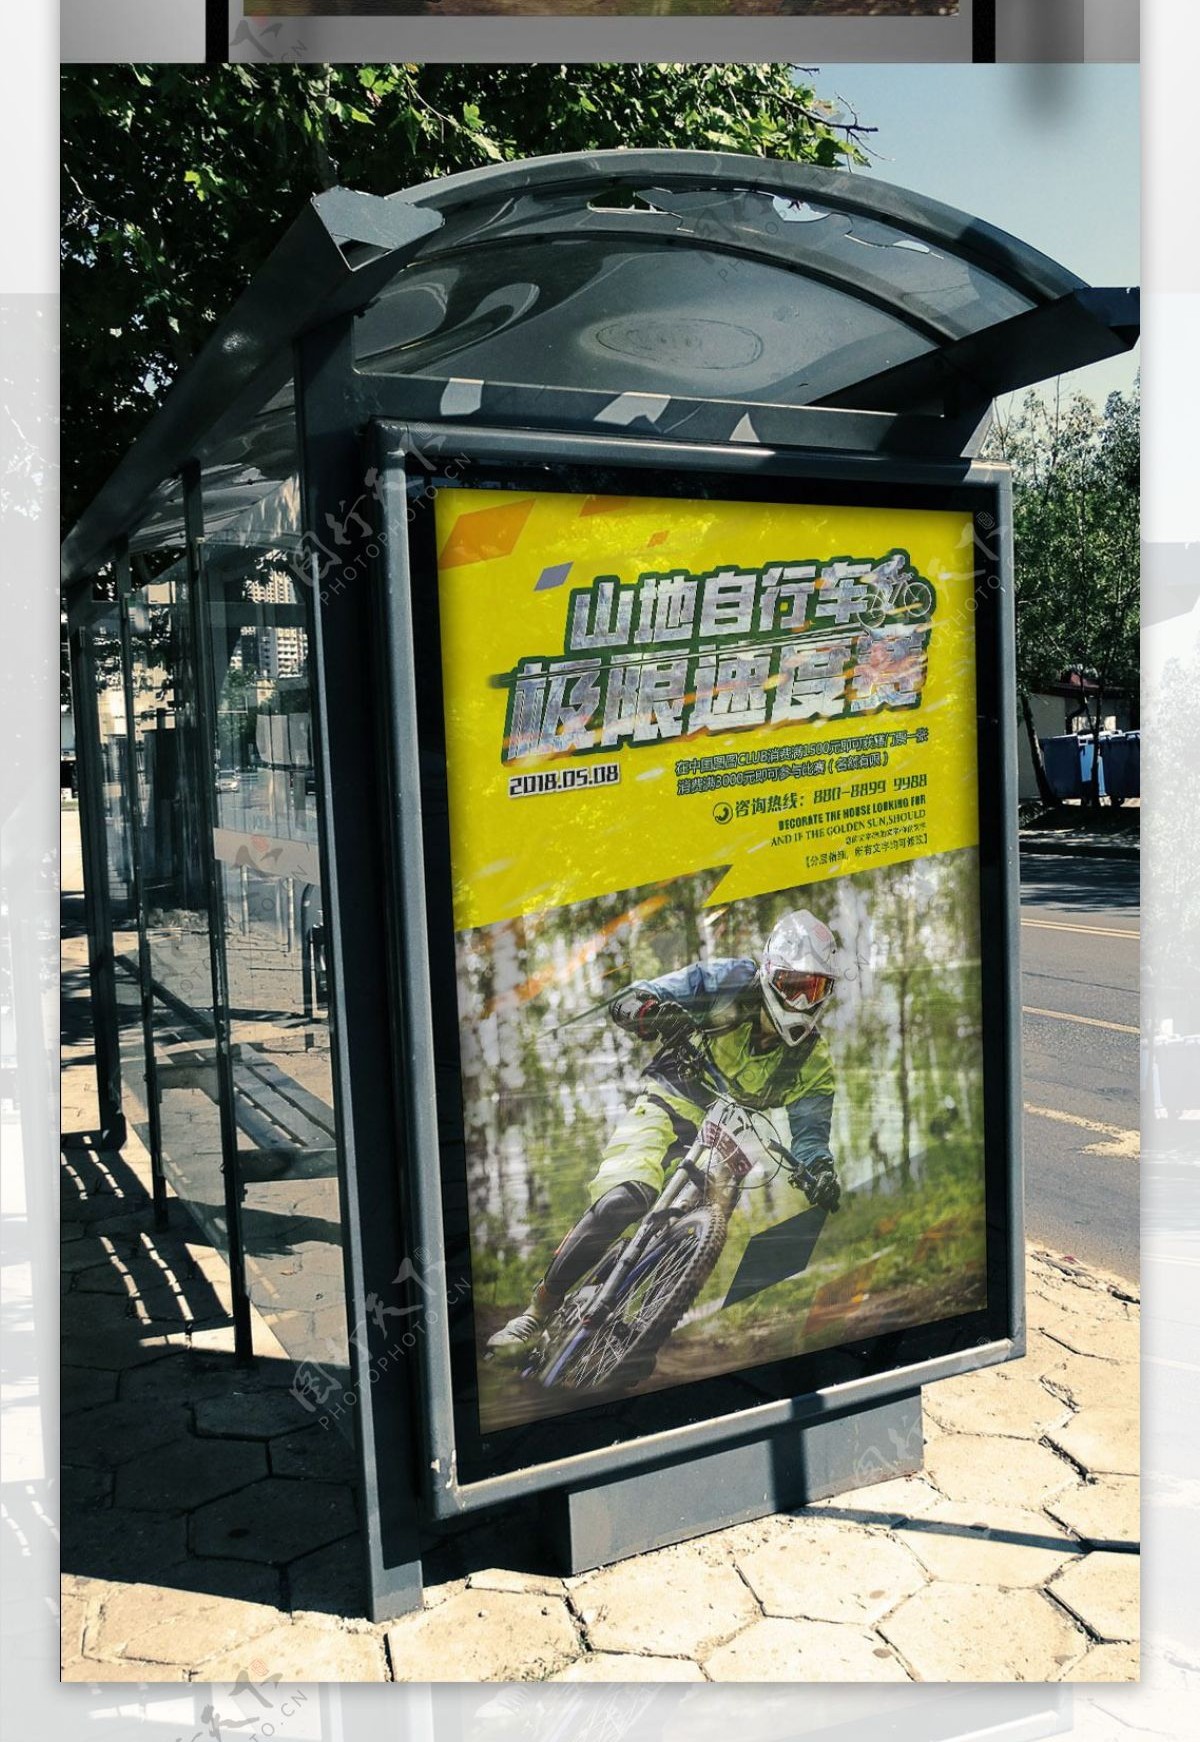 山地自行车极限速度比赛海报